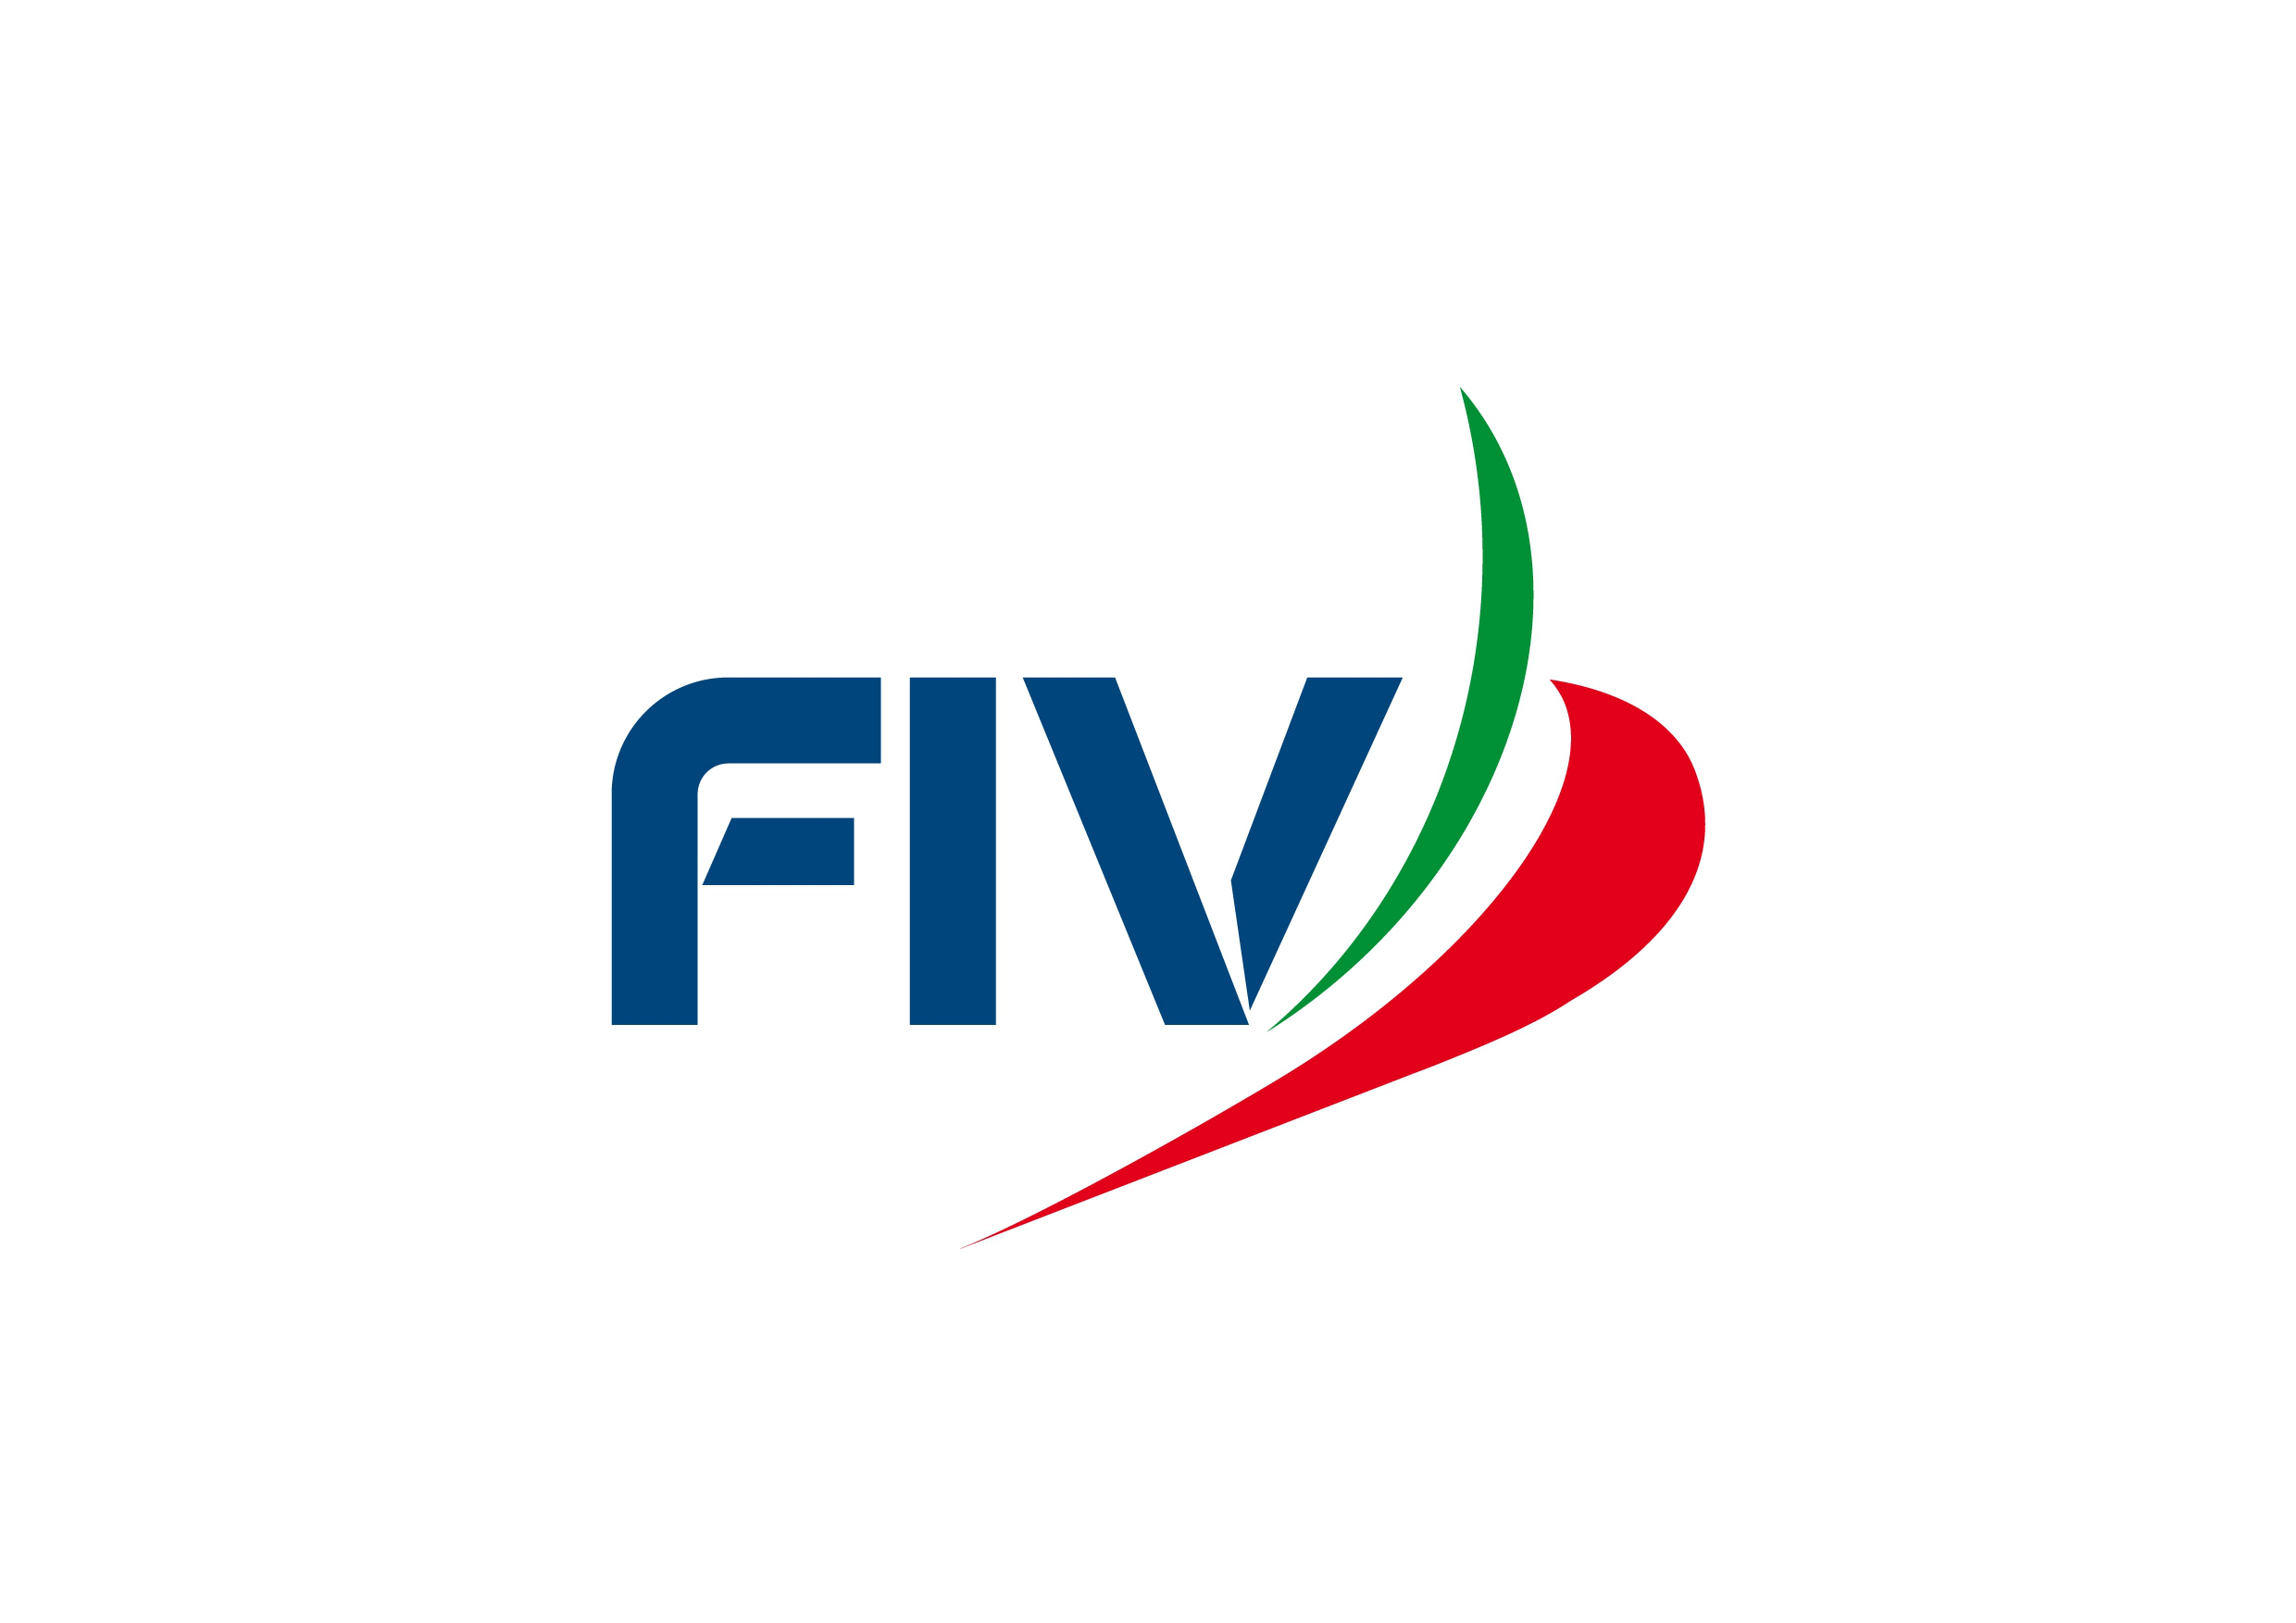 images/fiv/fiv_logo_5.png